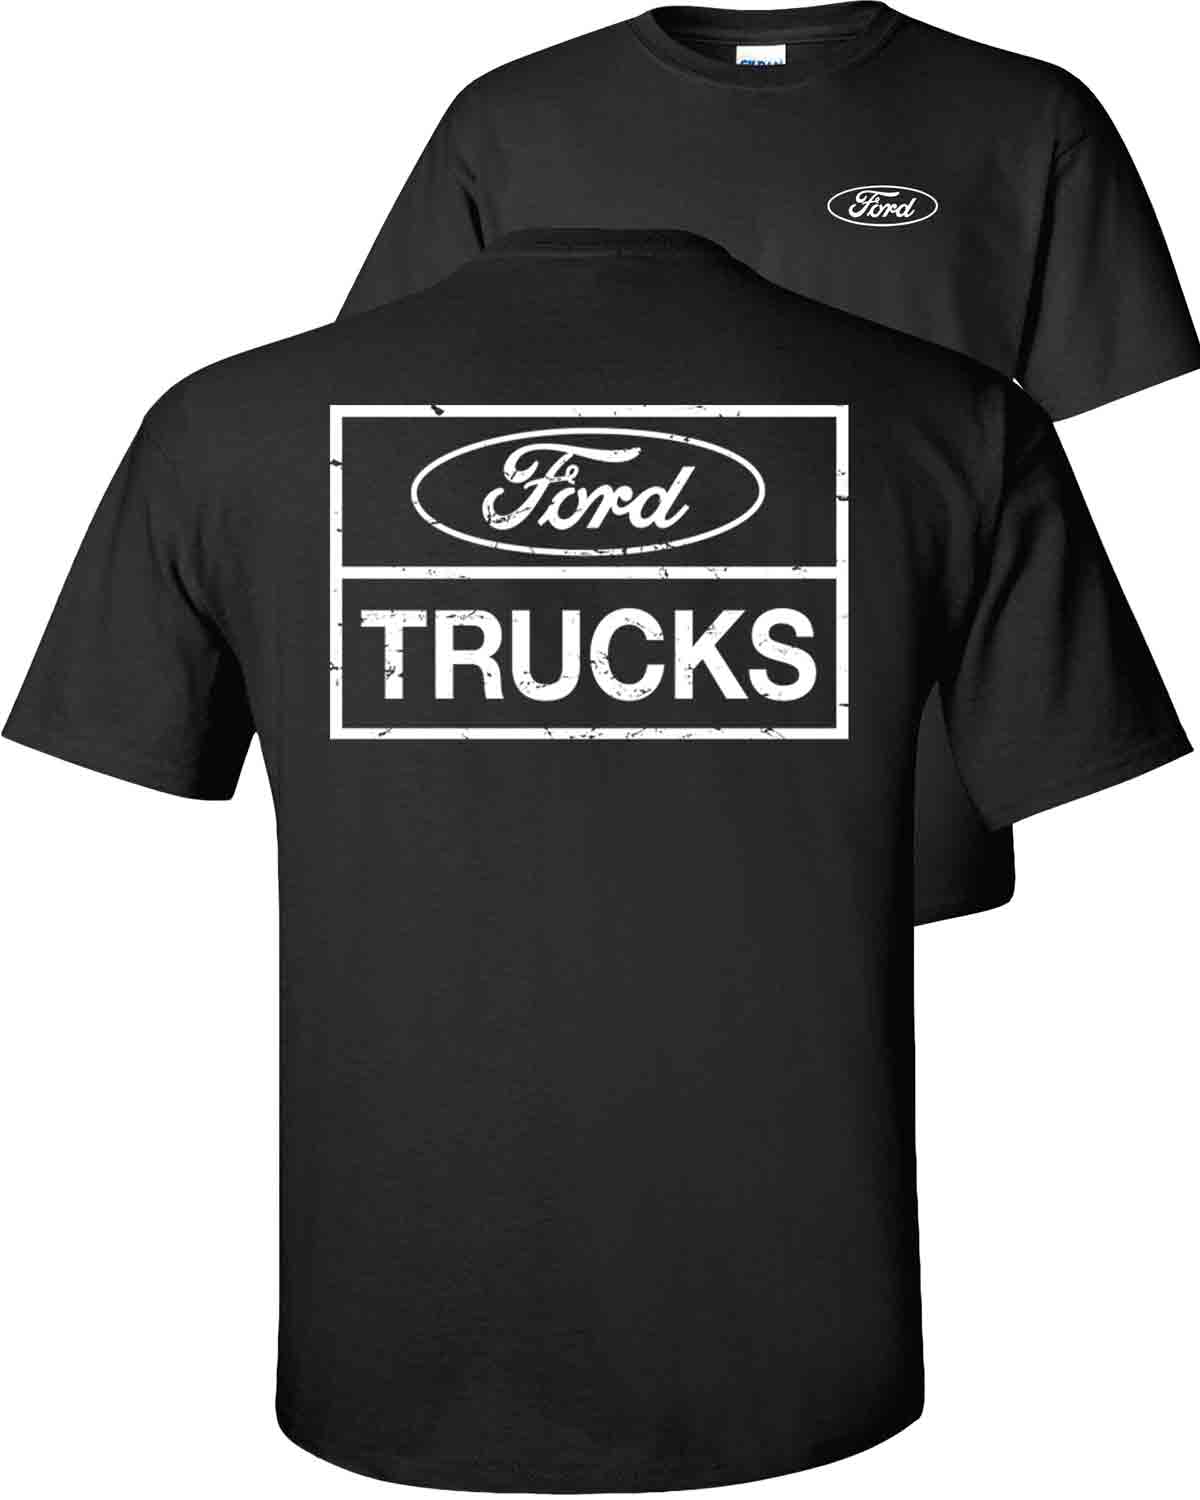 distressed-trucks-f-150-ford-t-shirt-fb-black.jpg